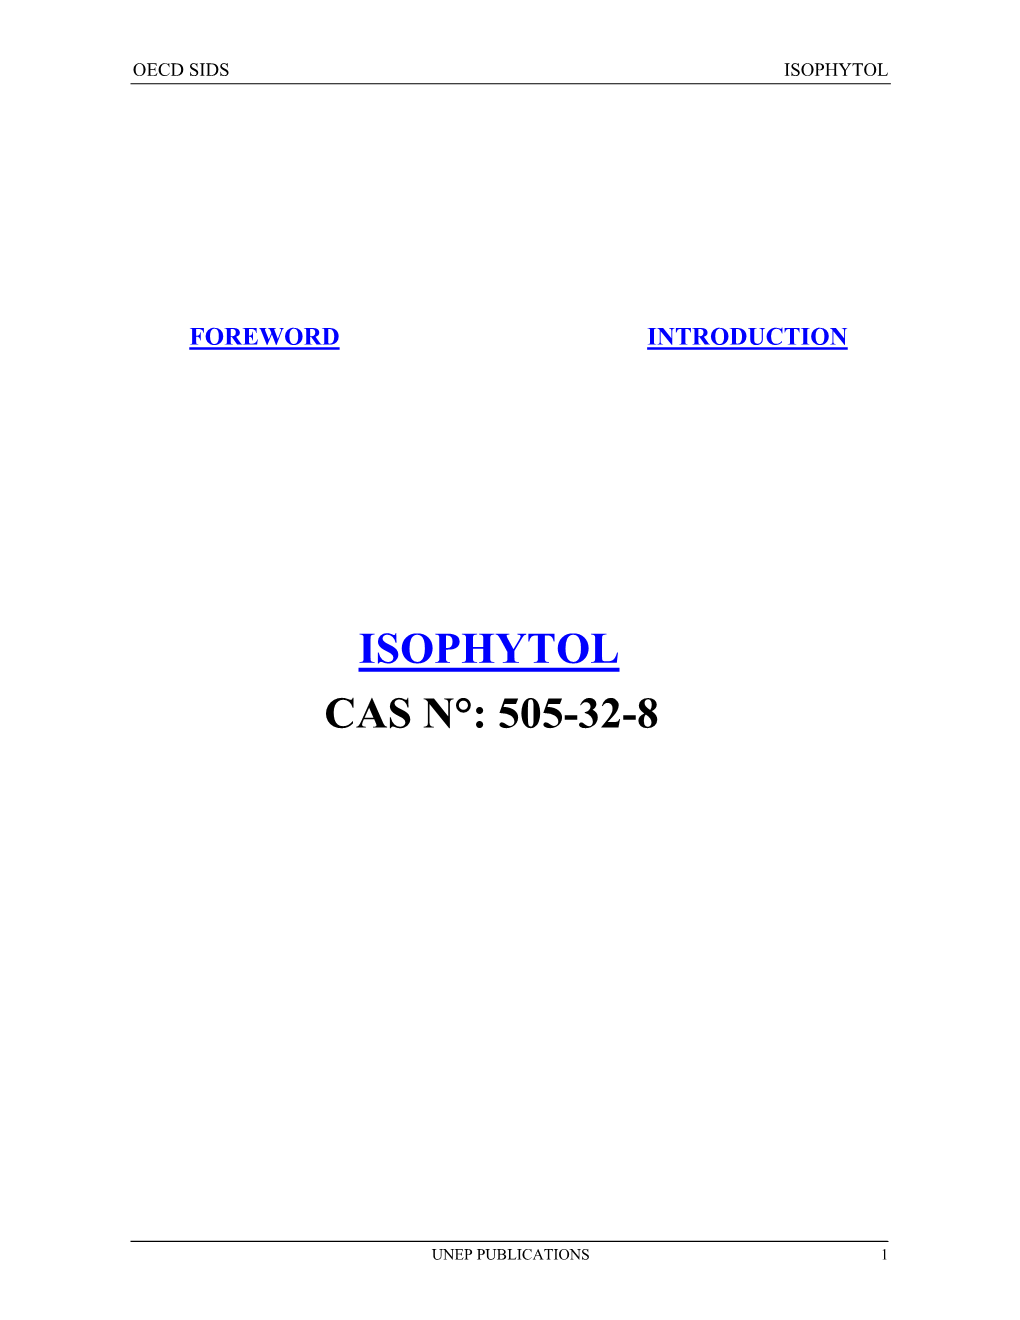 Isophytol Cas N°: 505-32-8